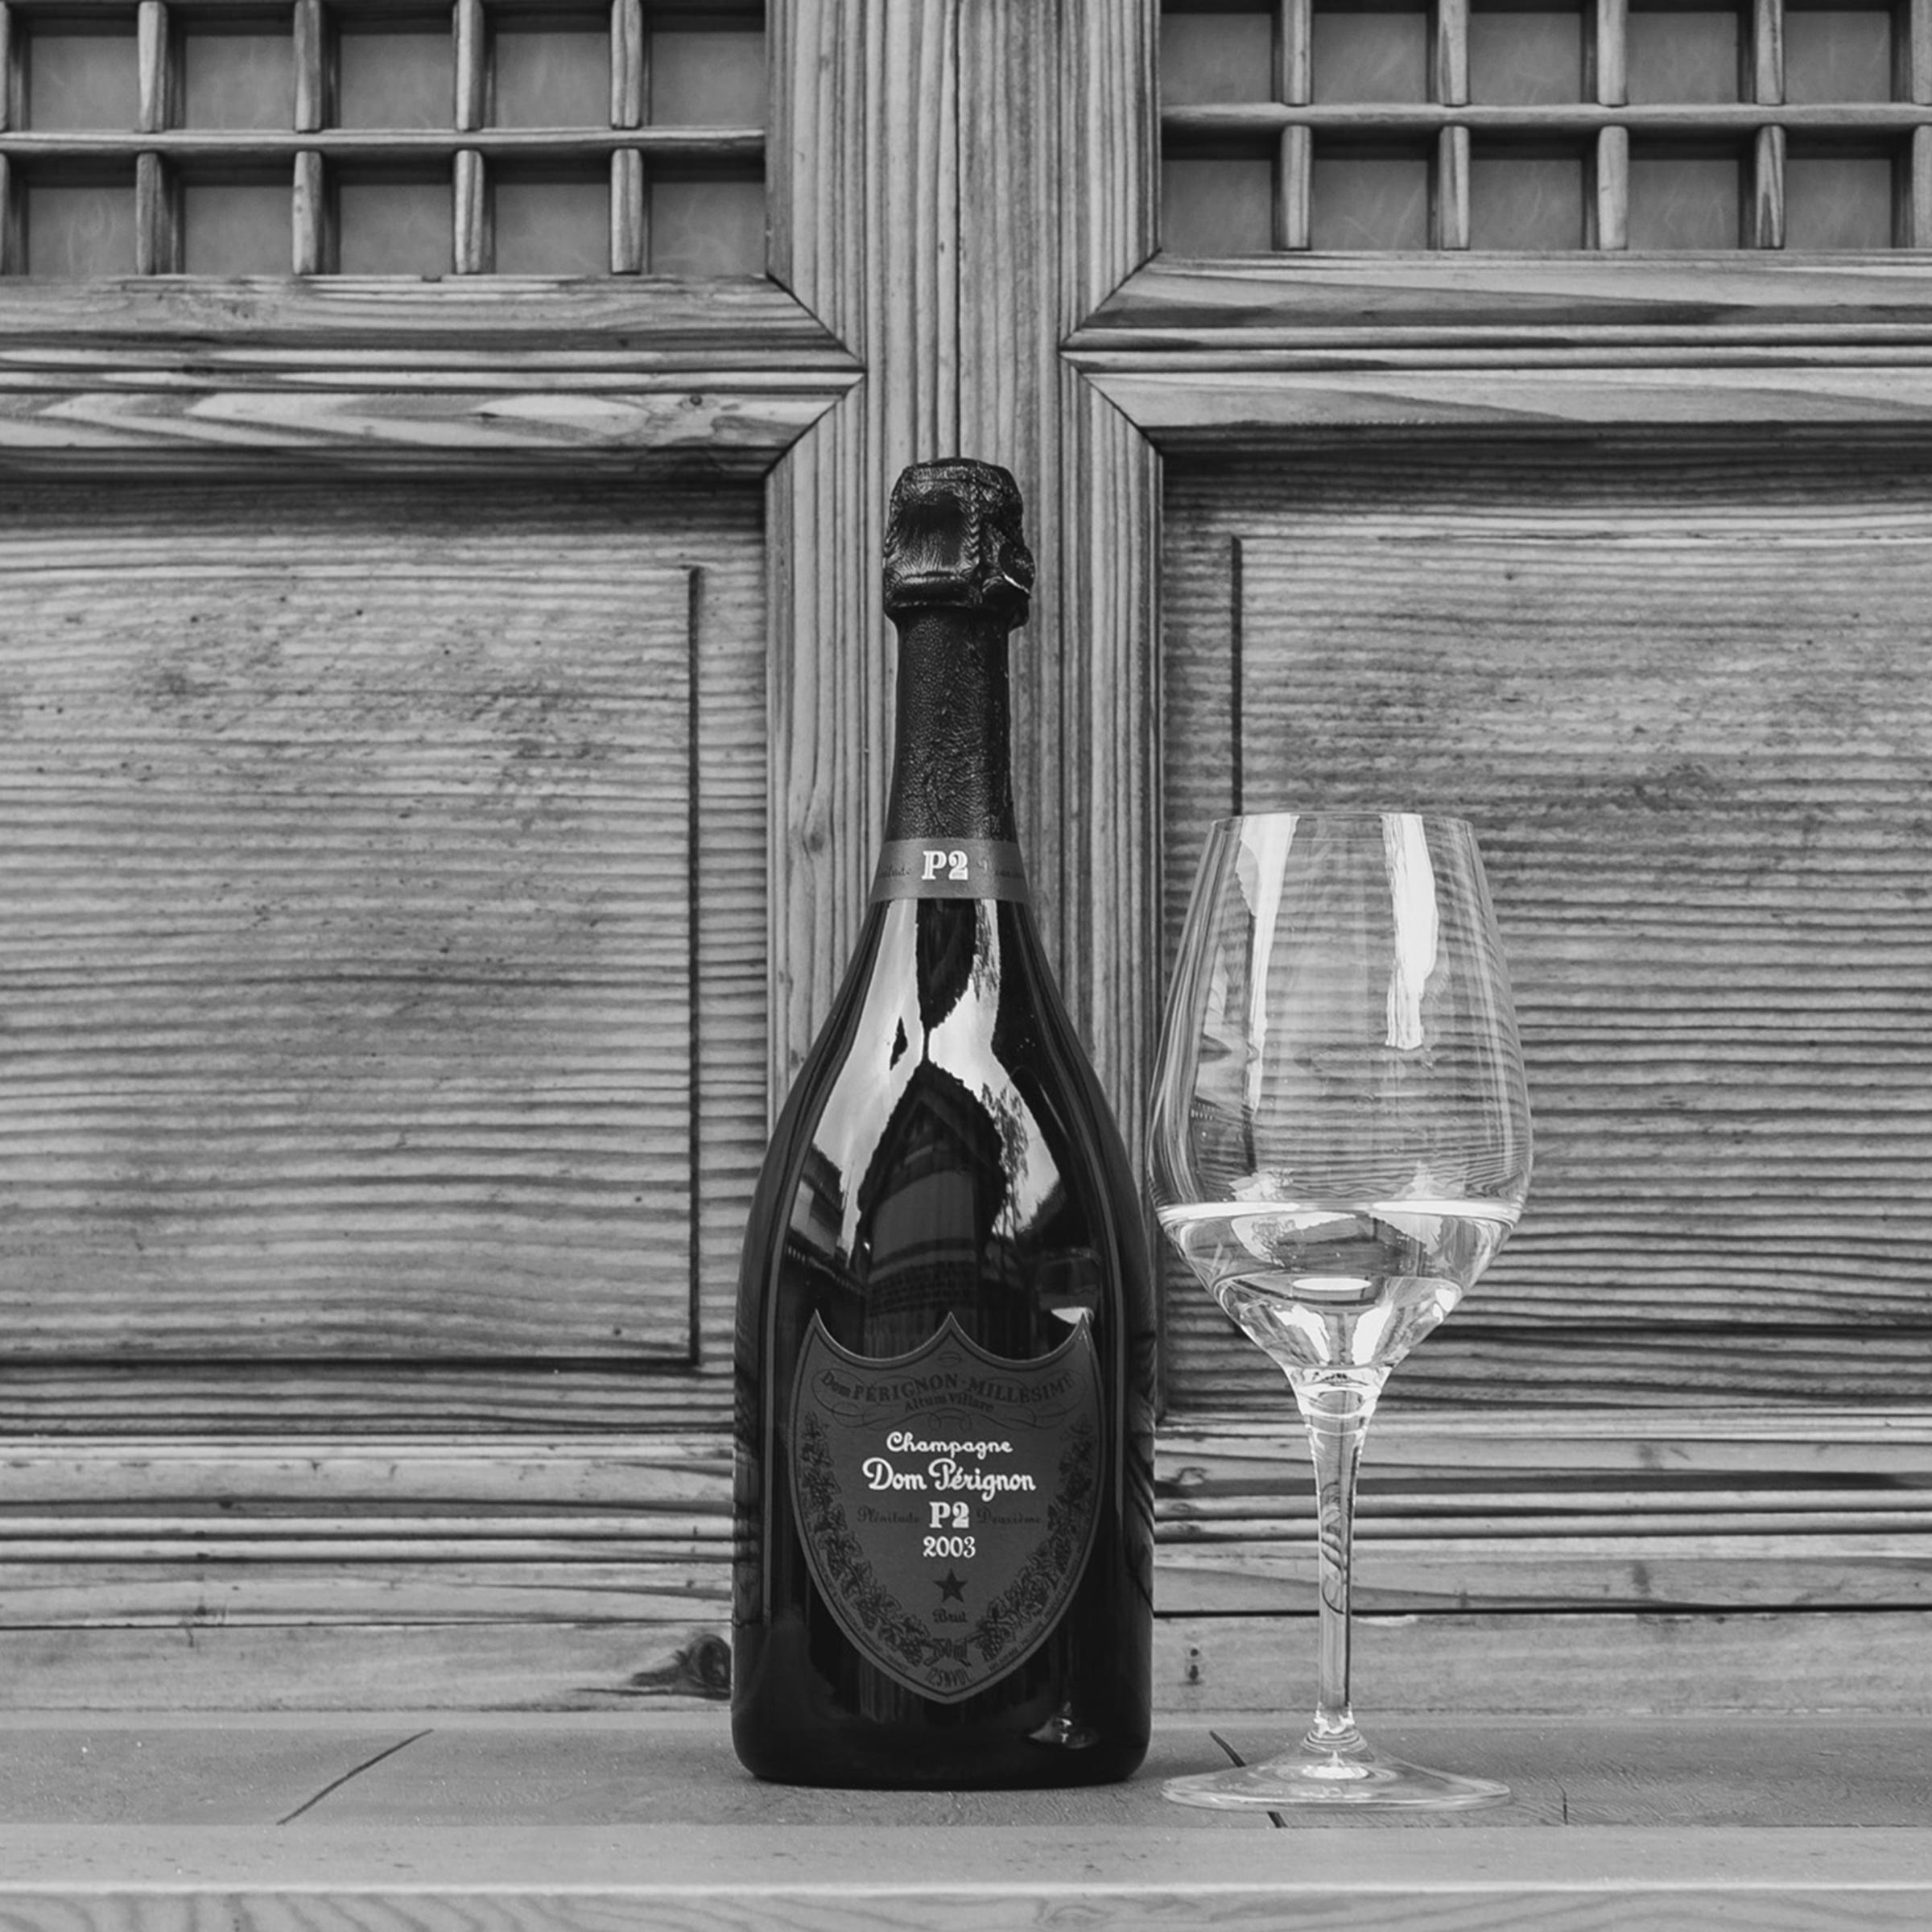 Champagne Dom Perignon P2 2003 0.75 lt.